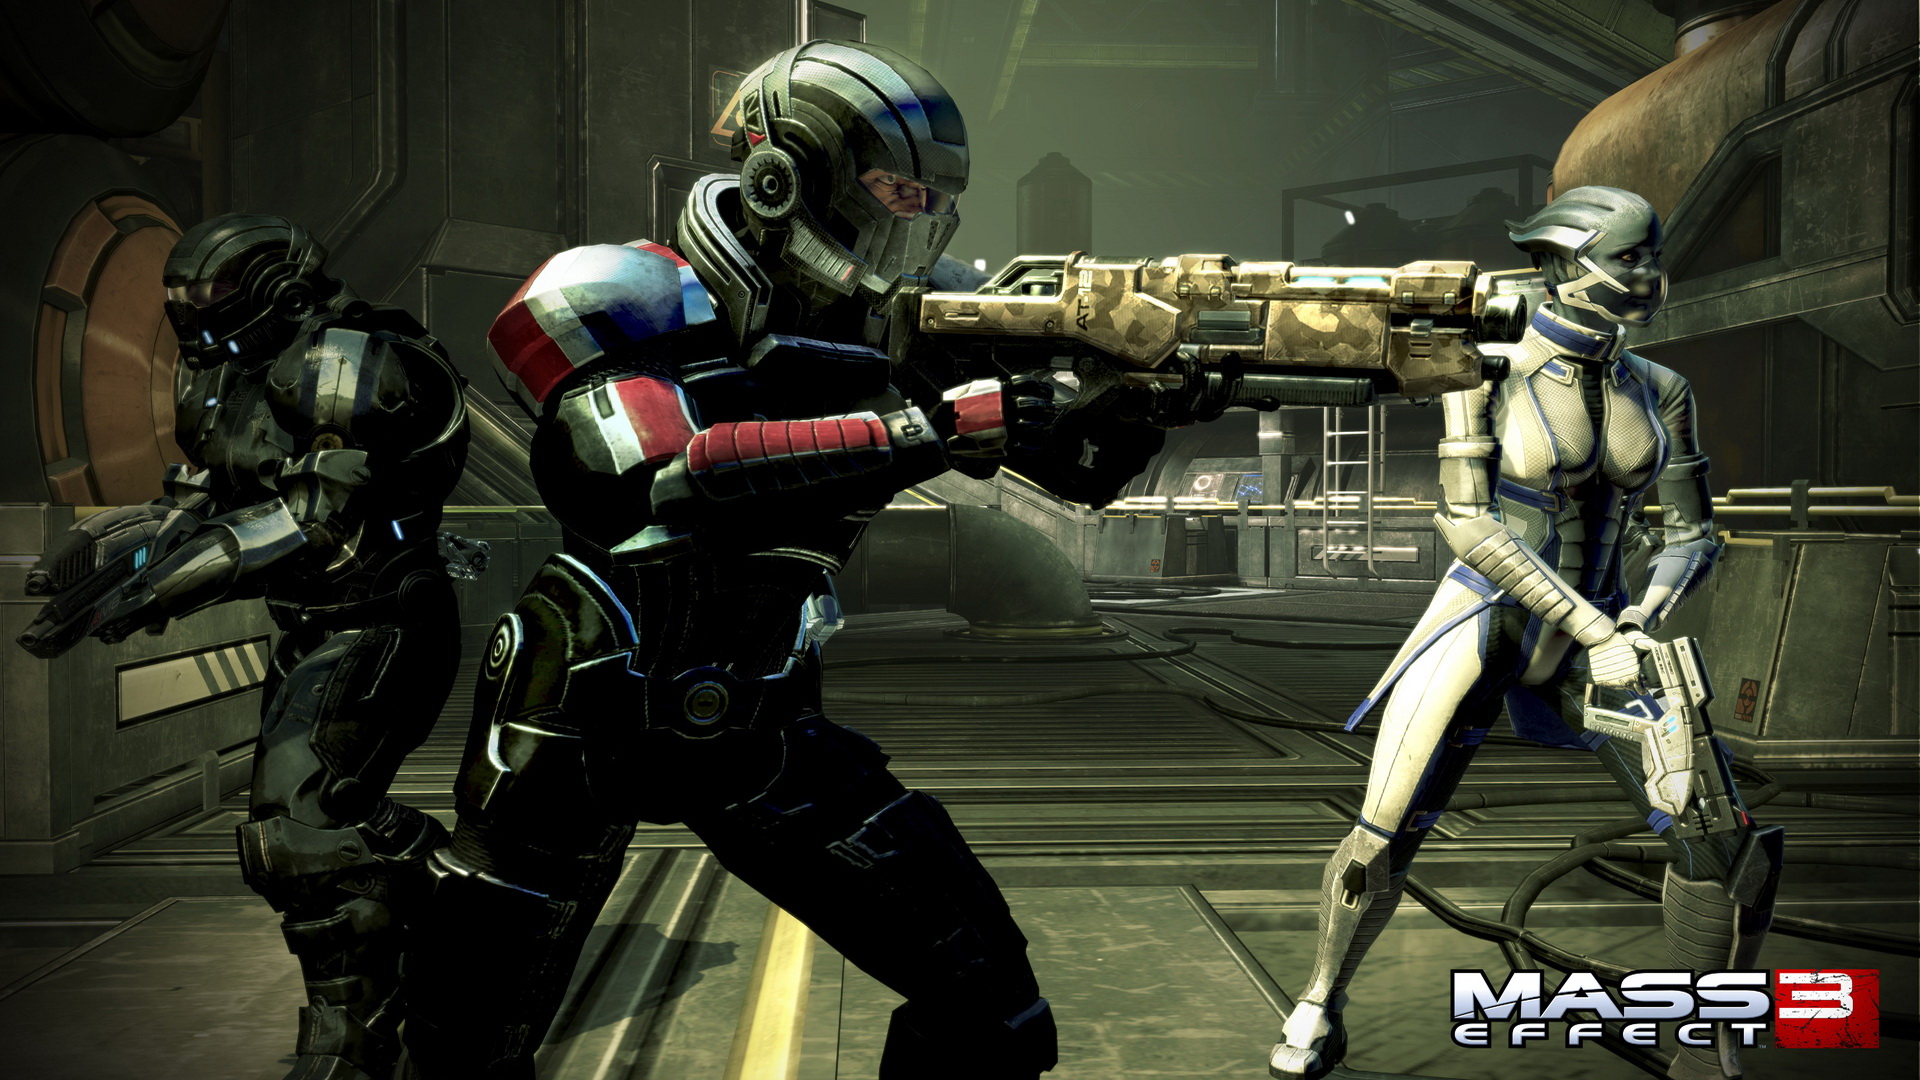 Mass Effect Wallpaper Playstation HD 1080p Video